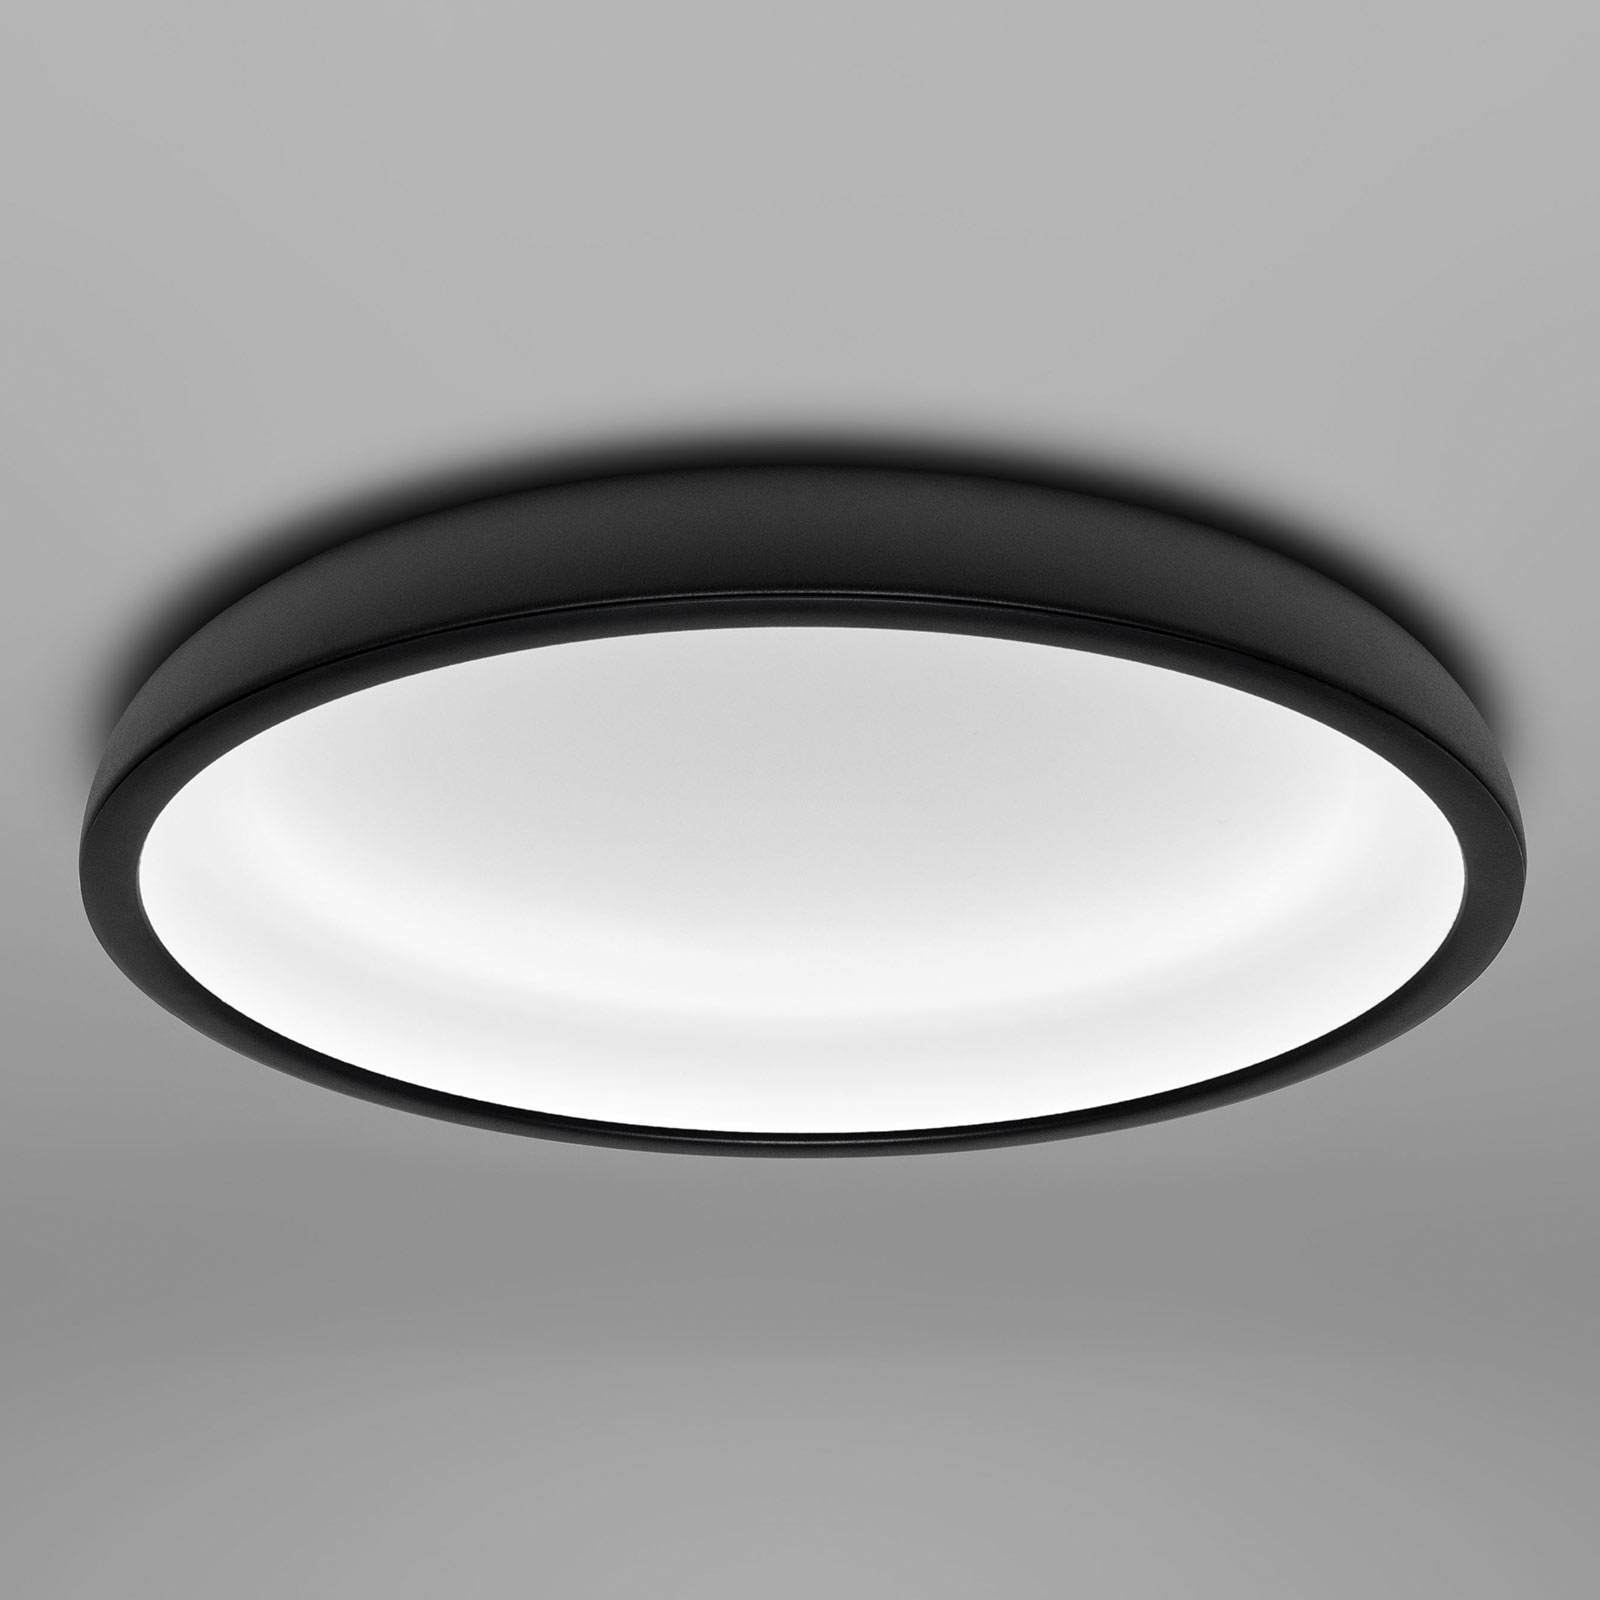 LED stropna svjetiljka Reflexio, Ø 46 cm, crna